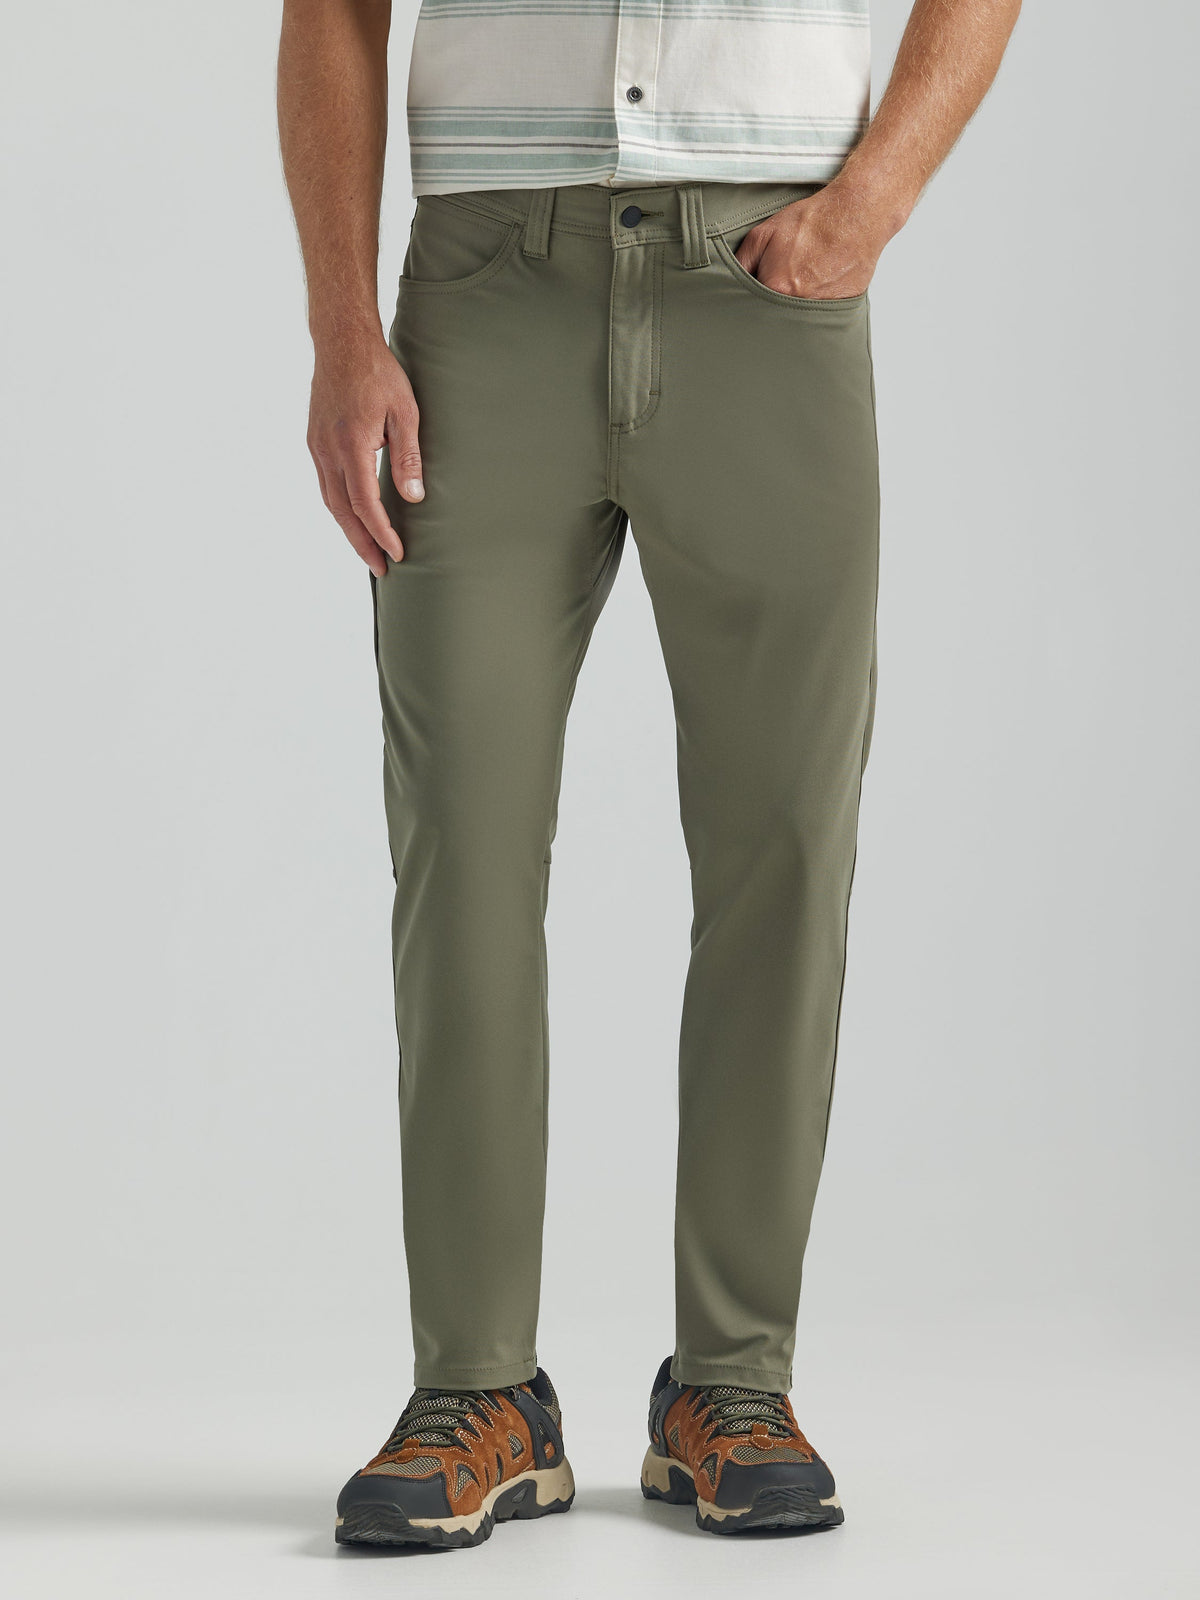 All Terrain Gear FWDS 5 Pocket Pants in Dusty Olive